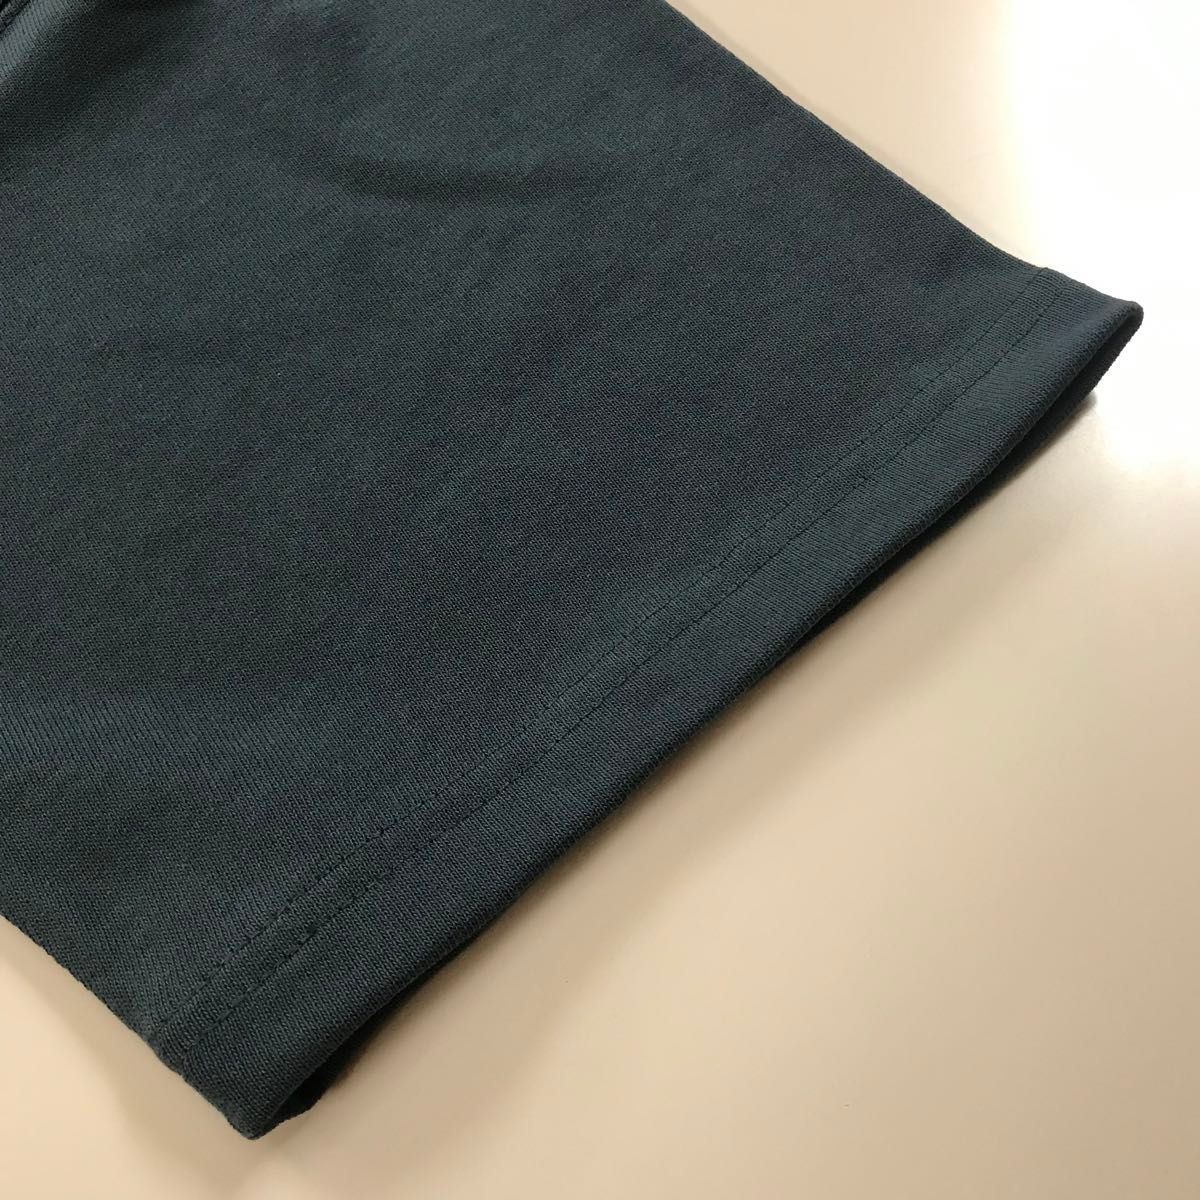 Tシャツ 半袖 マグマナムウエイト 9.1オンス【4411-01】L ミッドナイトブルー 綿100%